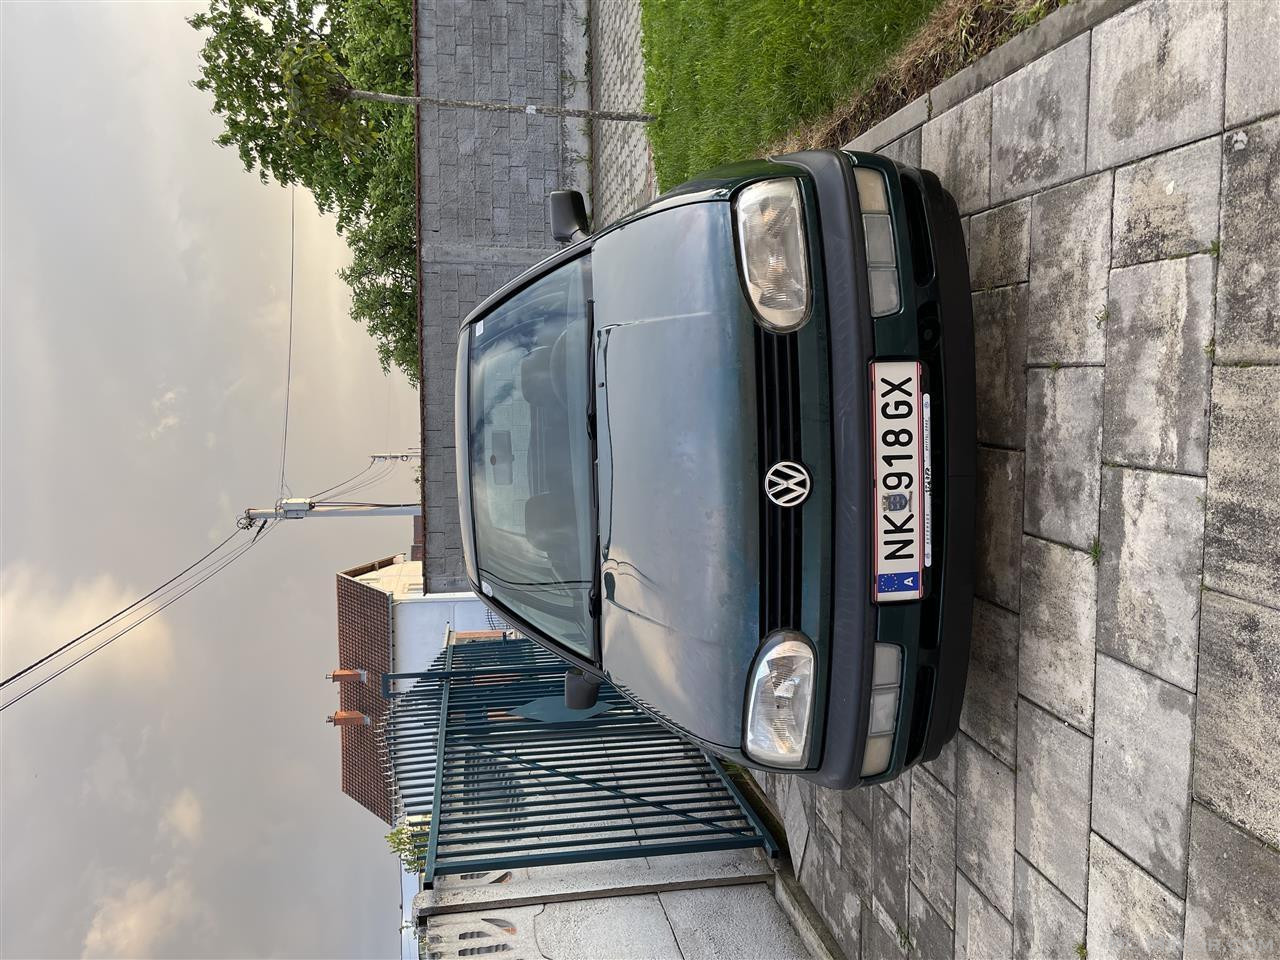 VW GOLF 3 1.9 TDI KLIMË 1996 PA DOGAN